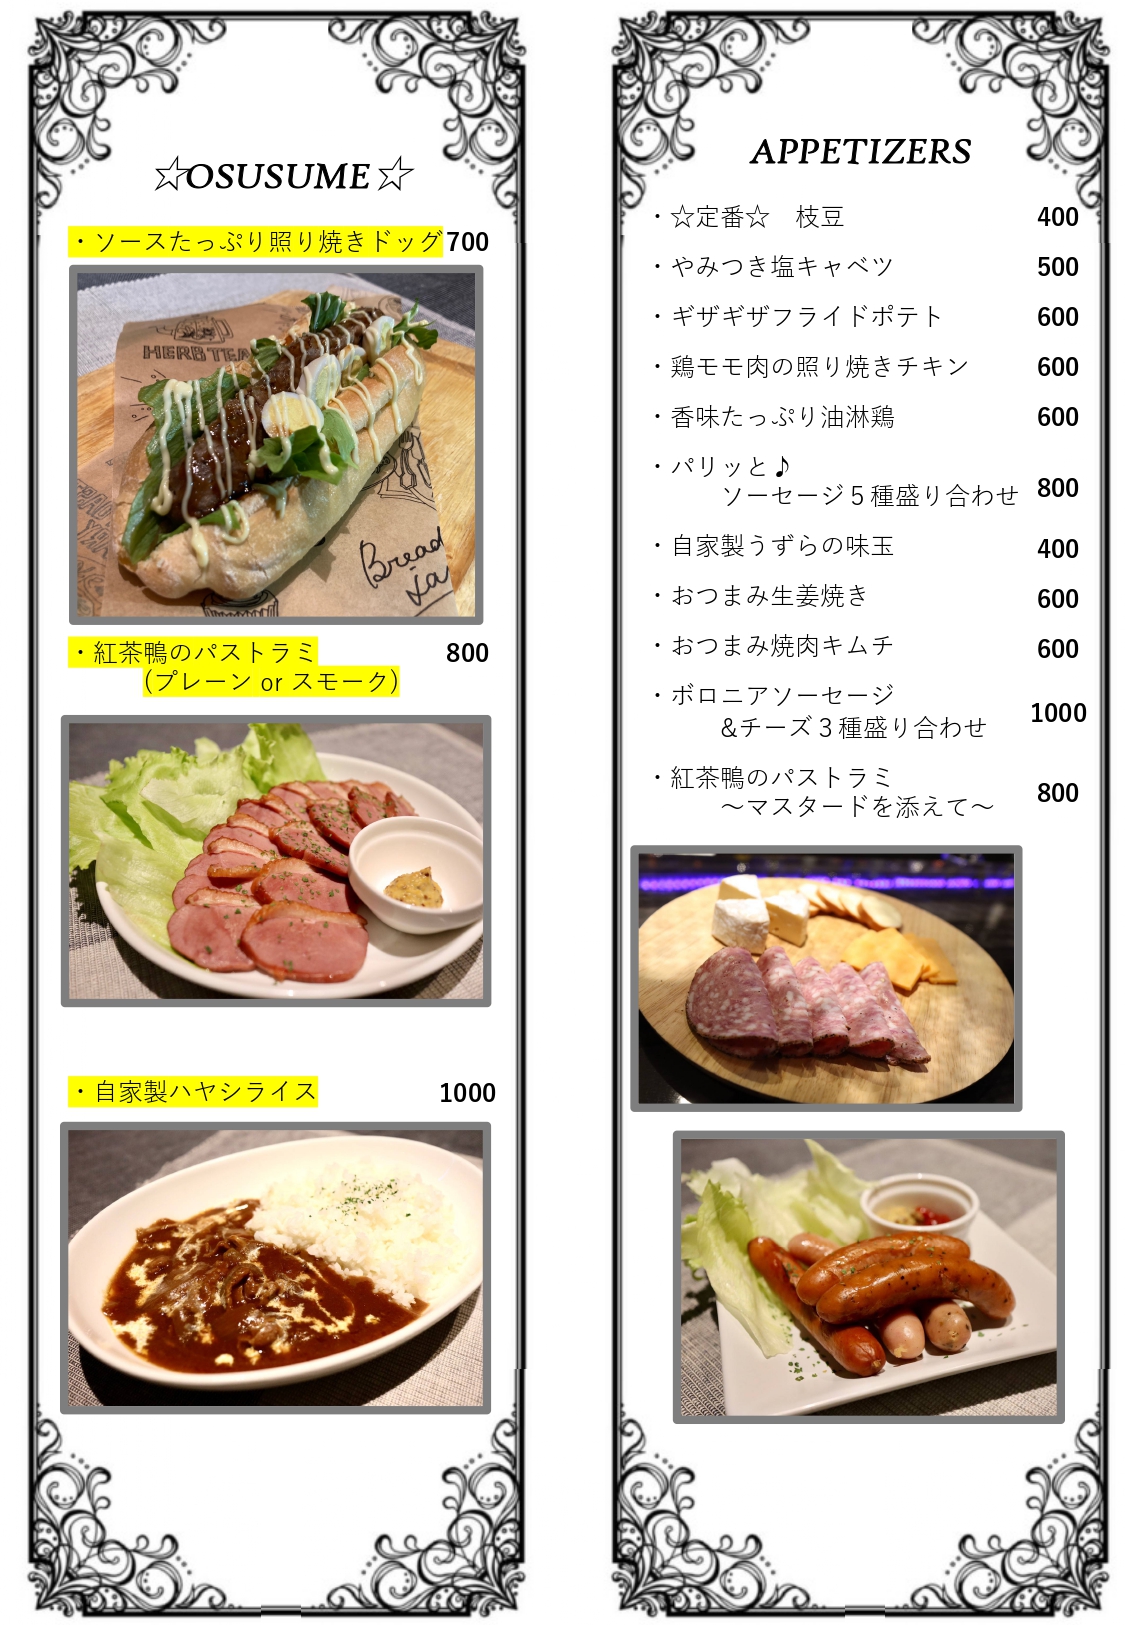 menu-food1